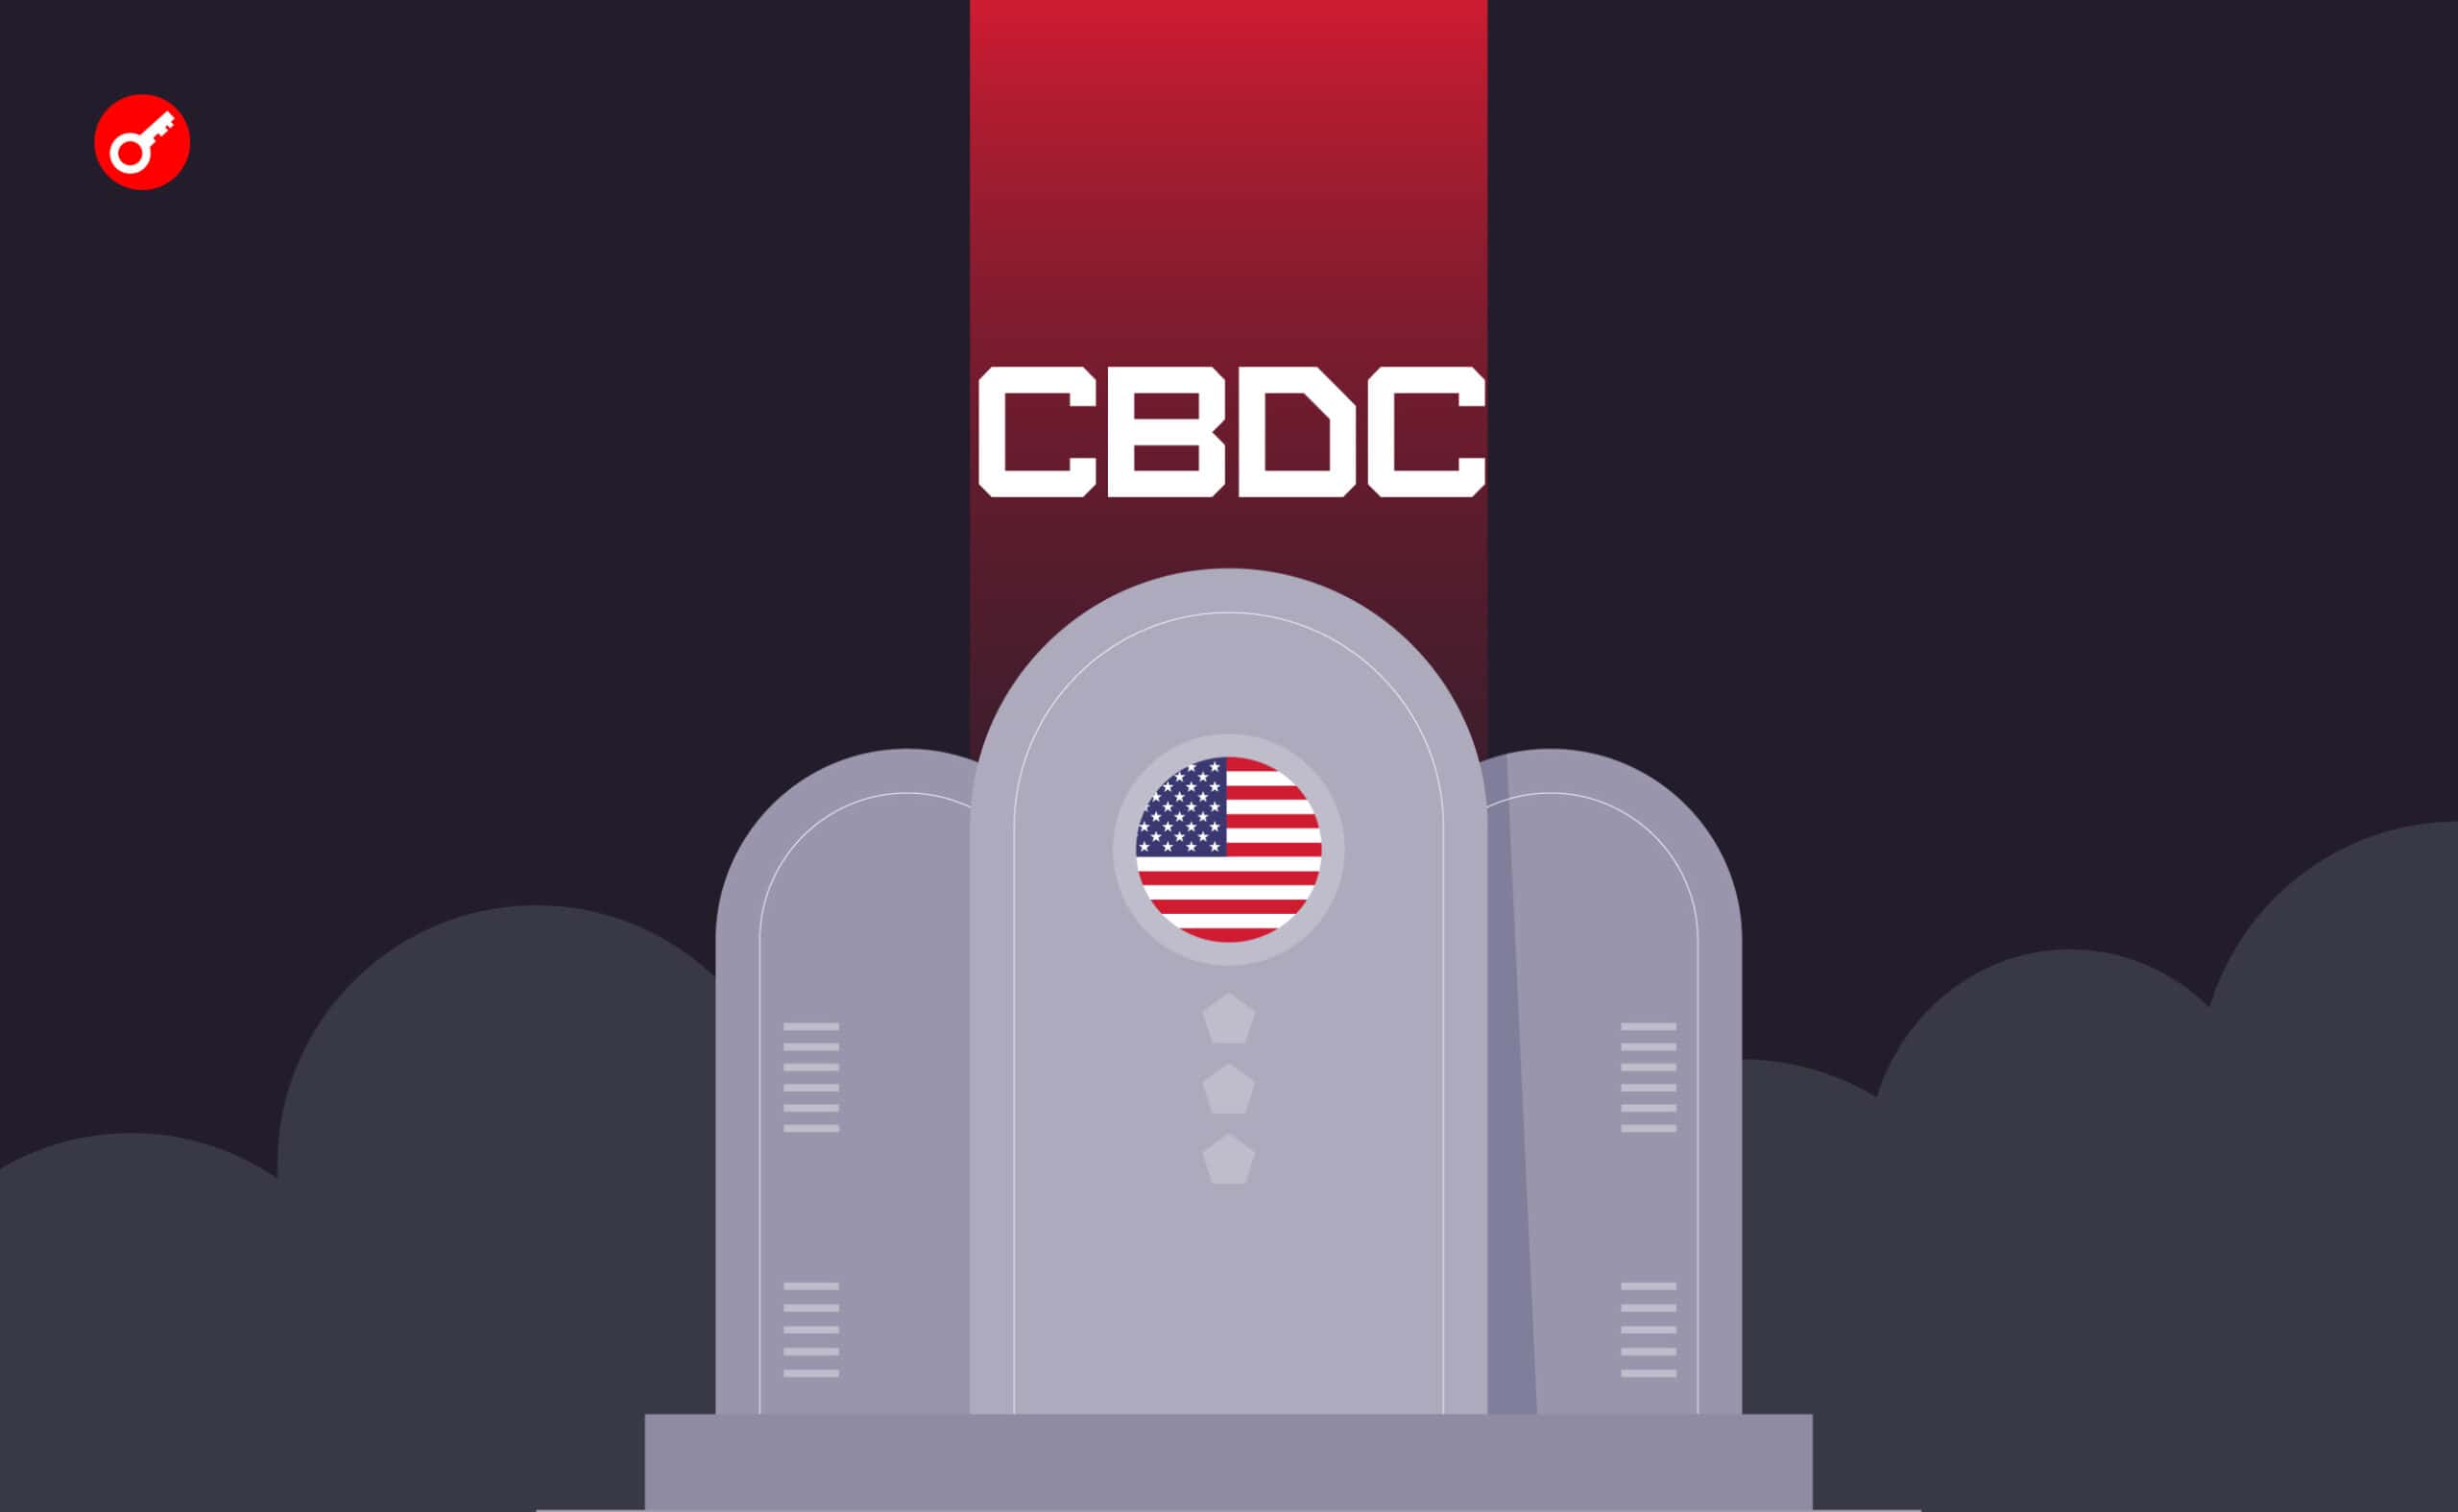 Кандидат в президенты США назвал CBDC «могилой американской свободы». Заглавный коллаж новости.